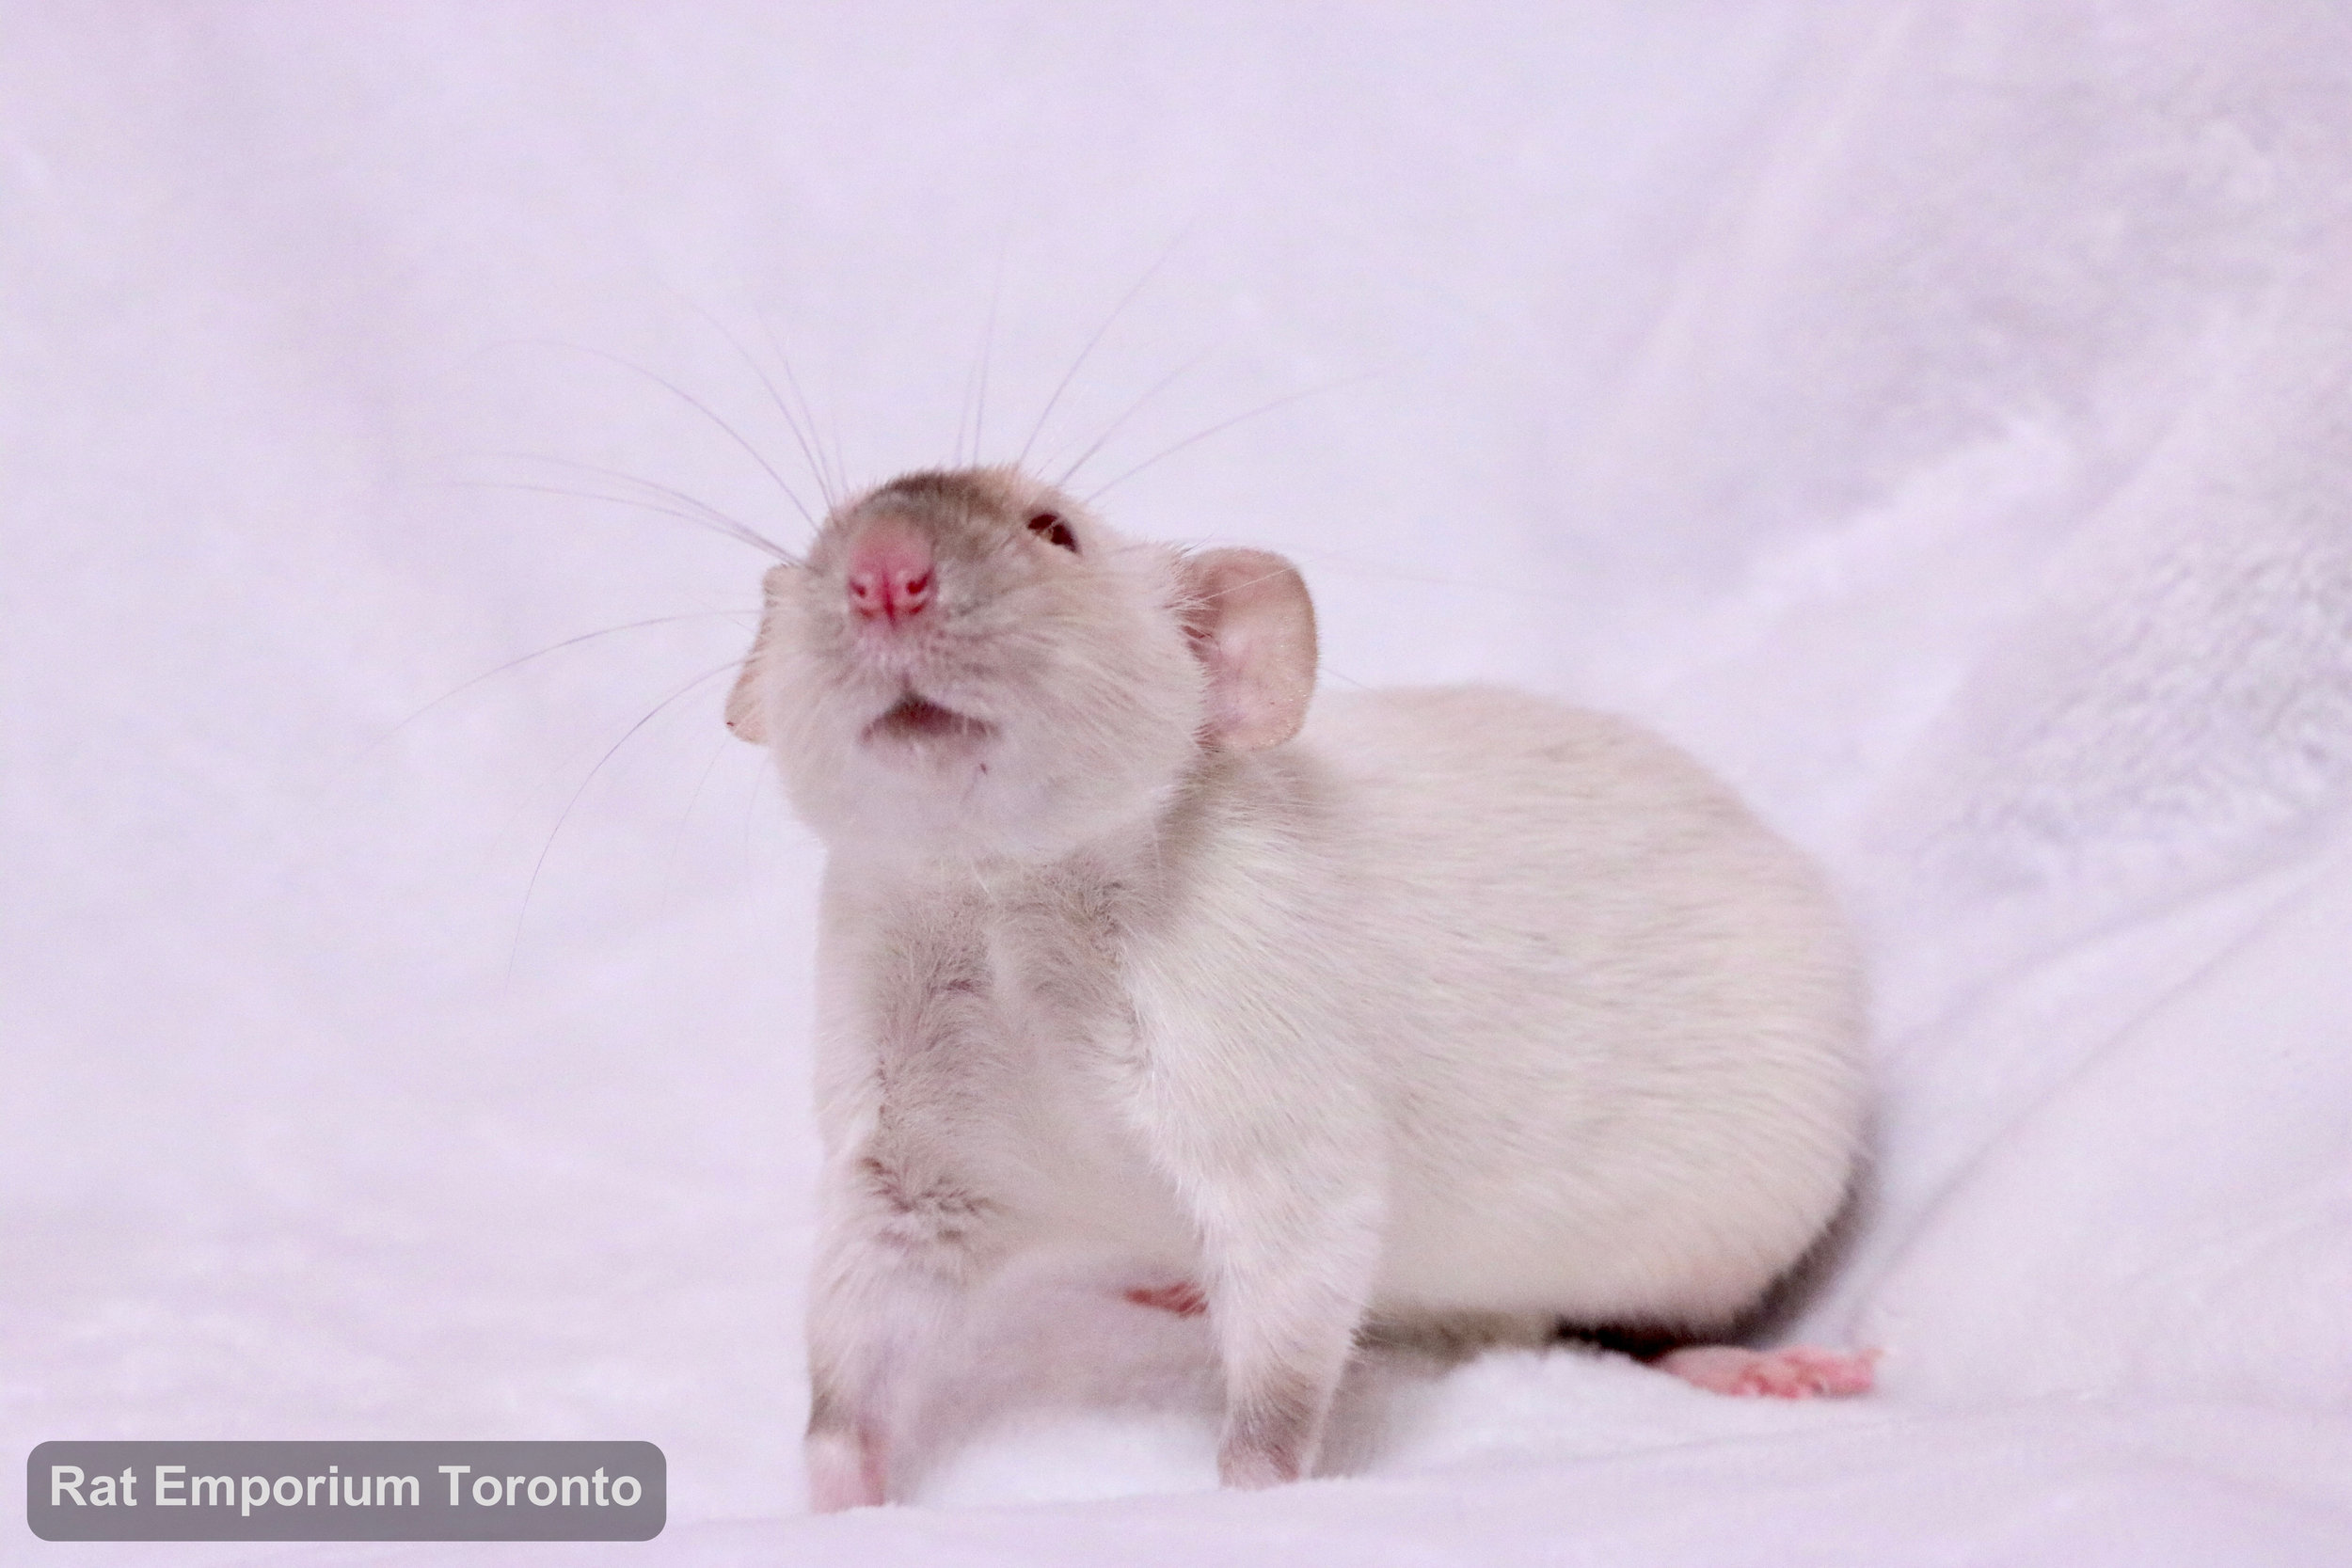 female siamese dumbo rat - born and raised at the Rat Emporium Toronto - rat breeder - adopt pet rats Toronto